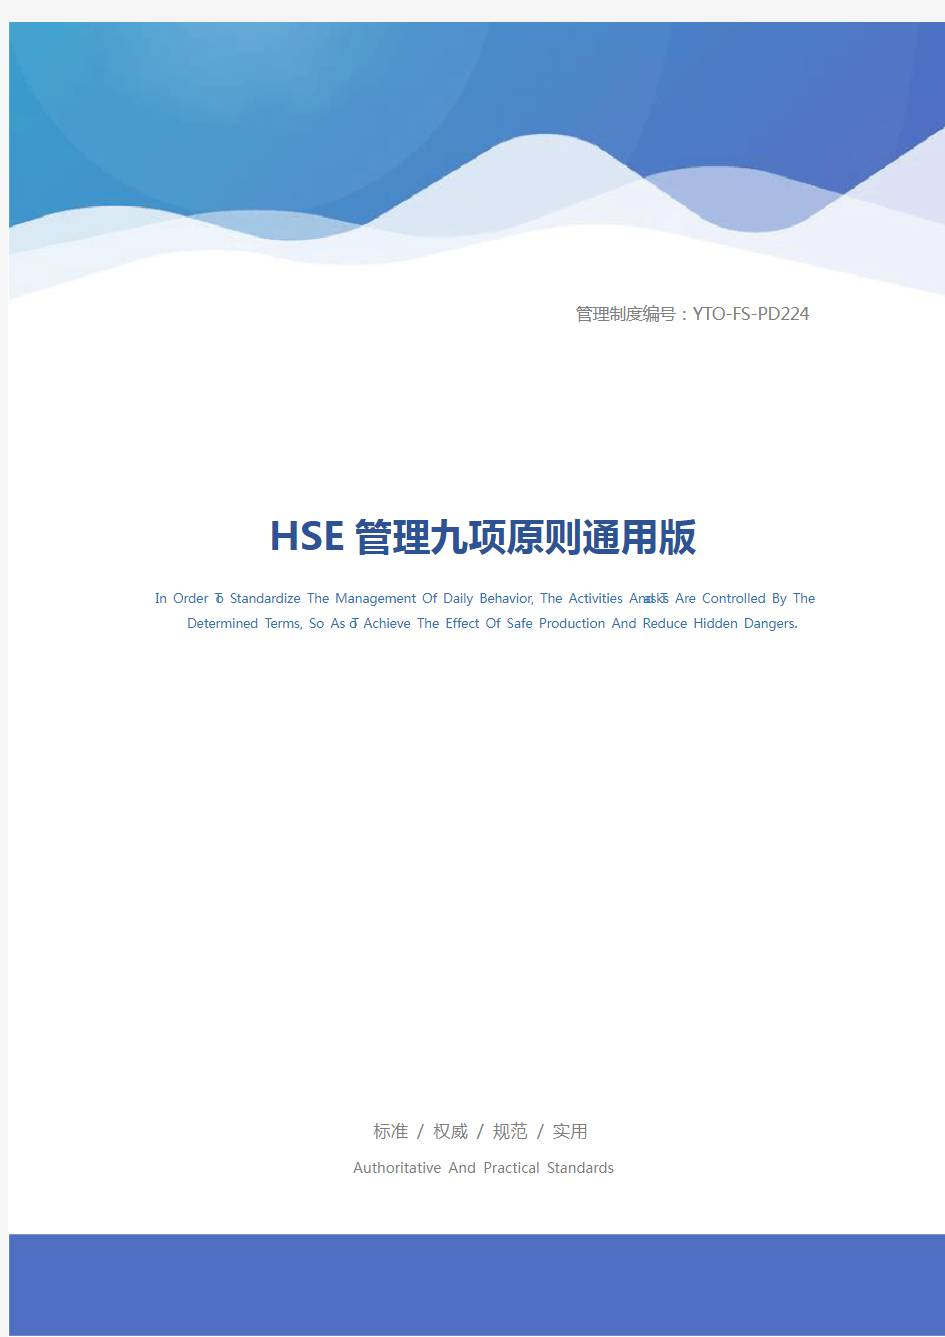 HSE管理九项原则通用版